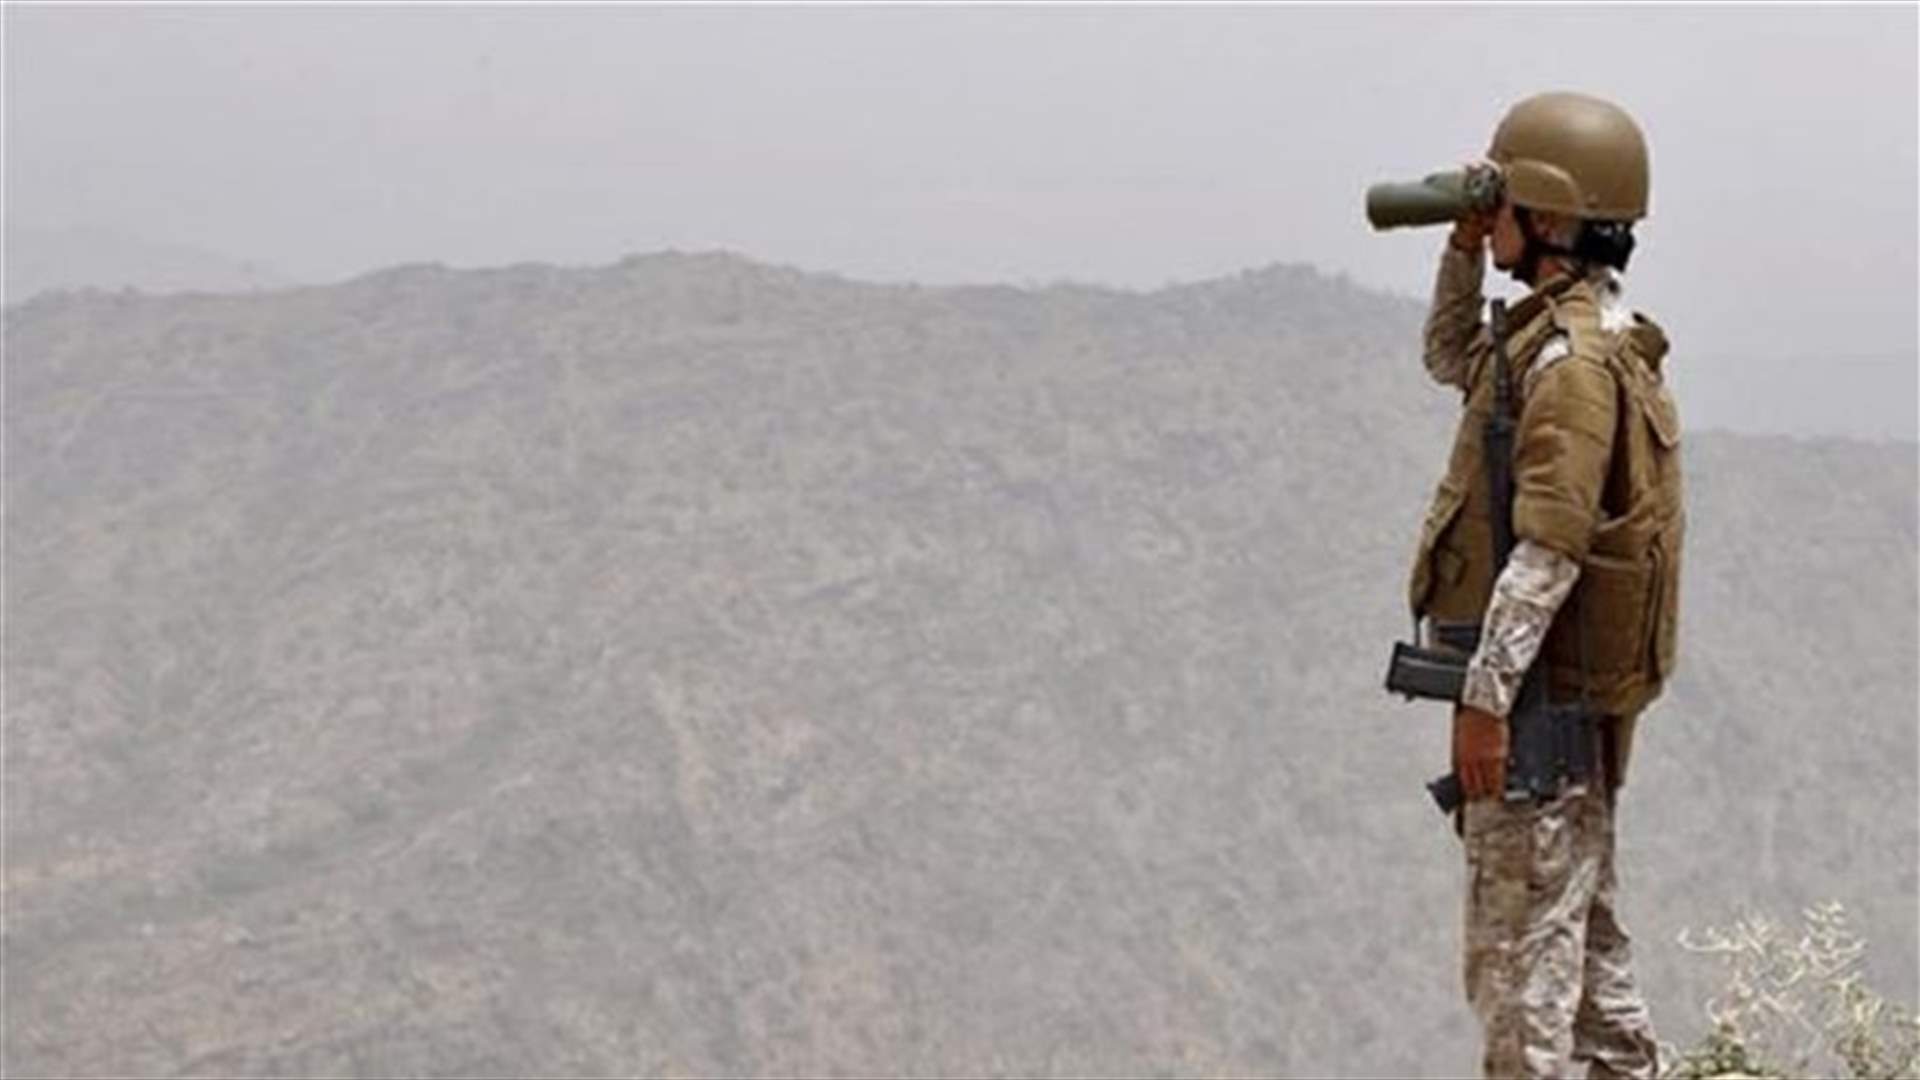 Yemen expresses concern at US raid but stops short of ban